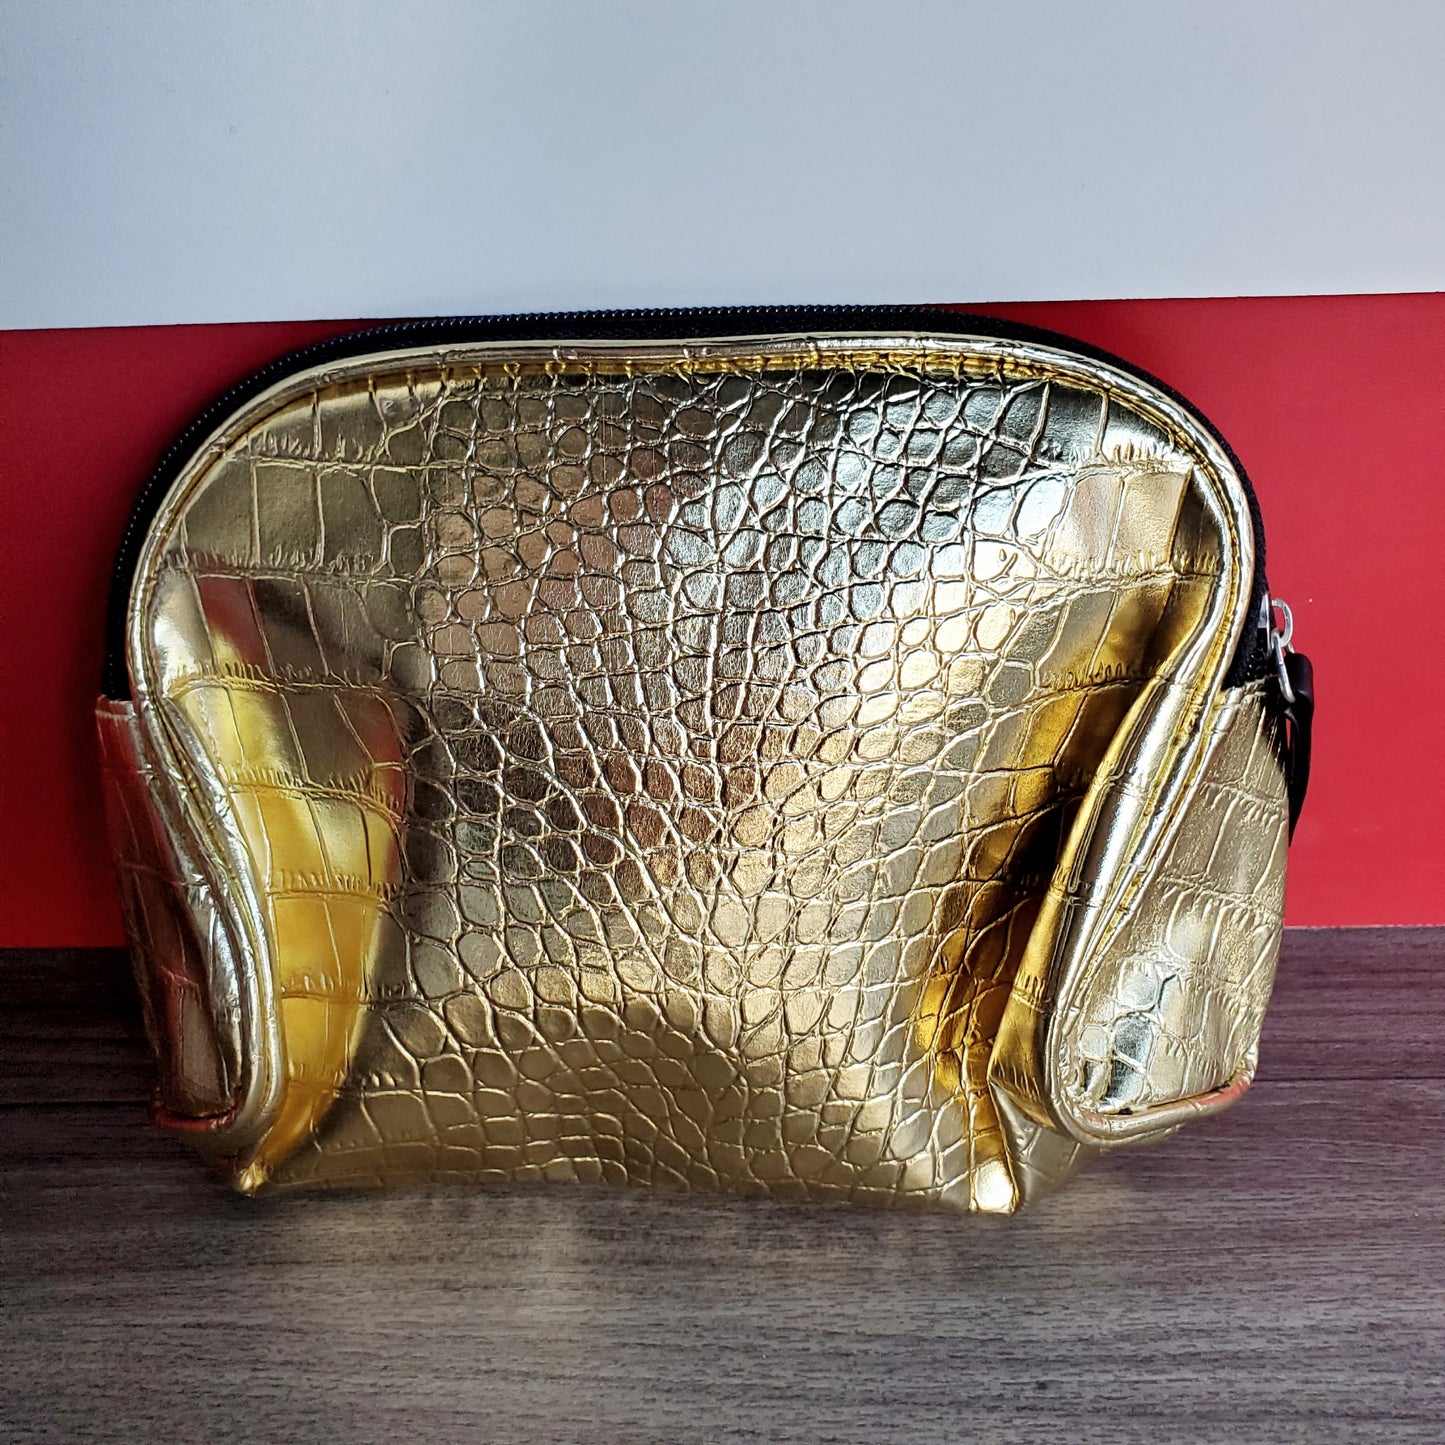 Pure Barre Makeup Bag- Gold Reptile